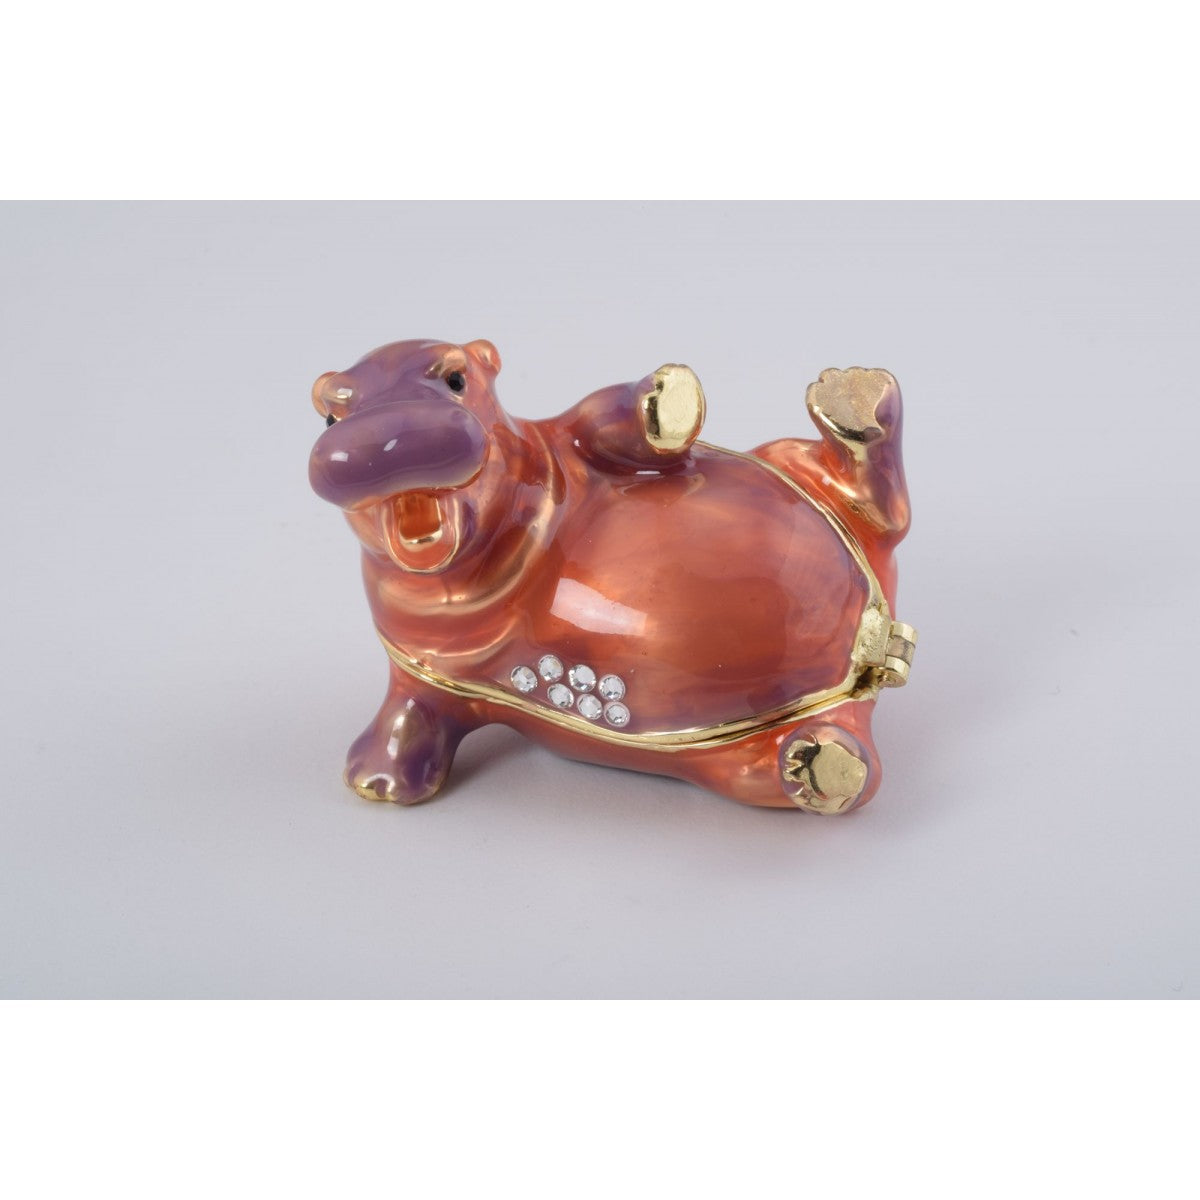 Happy Hippo Trinket Box by Keren Kopal